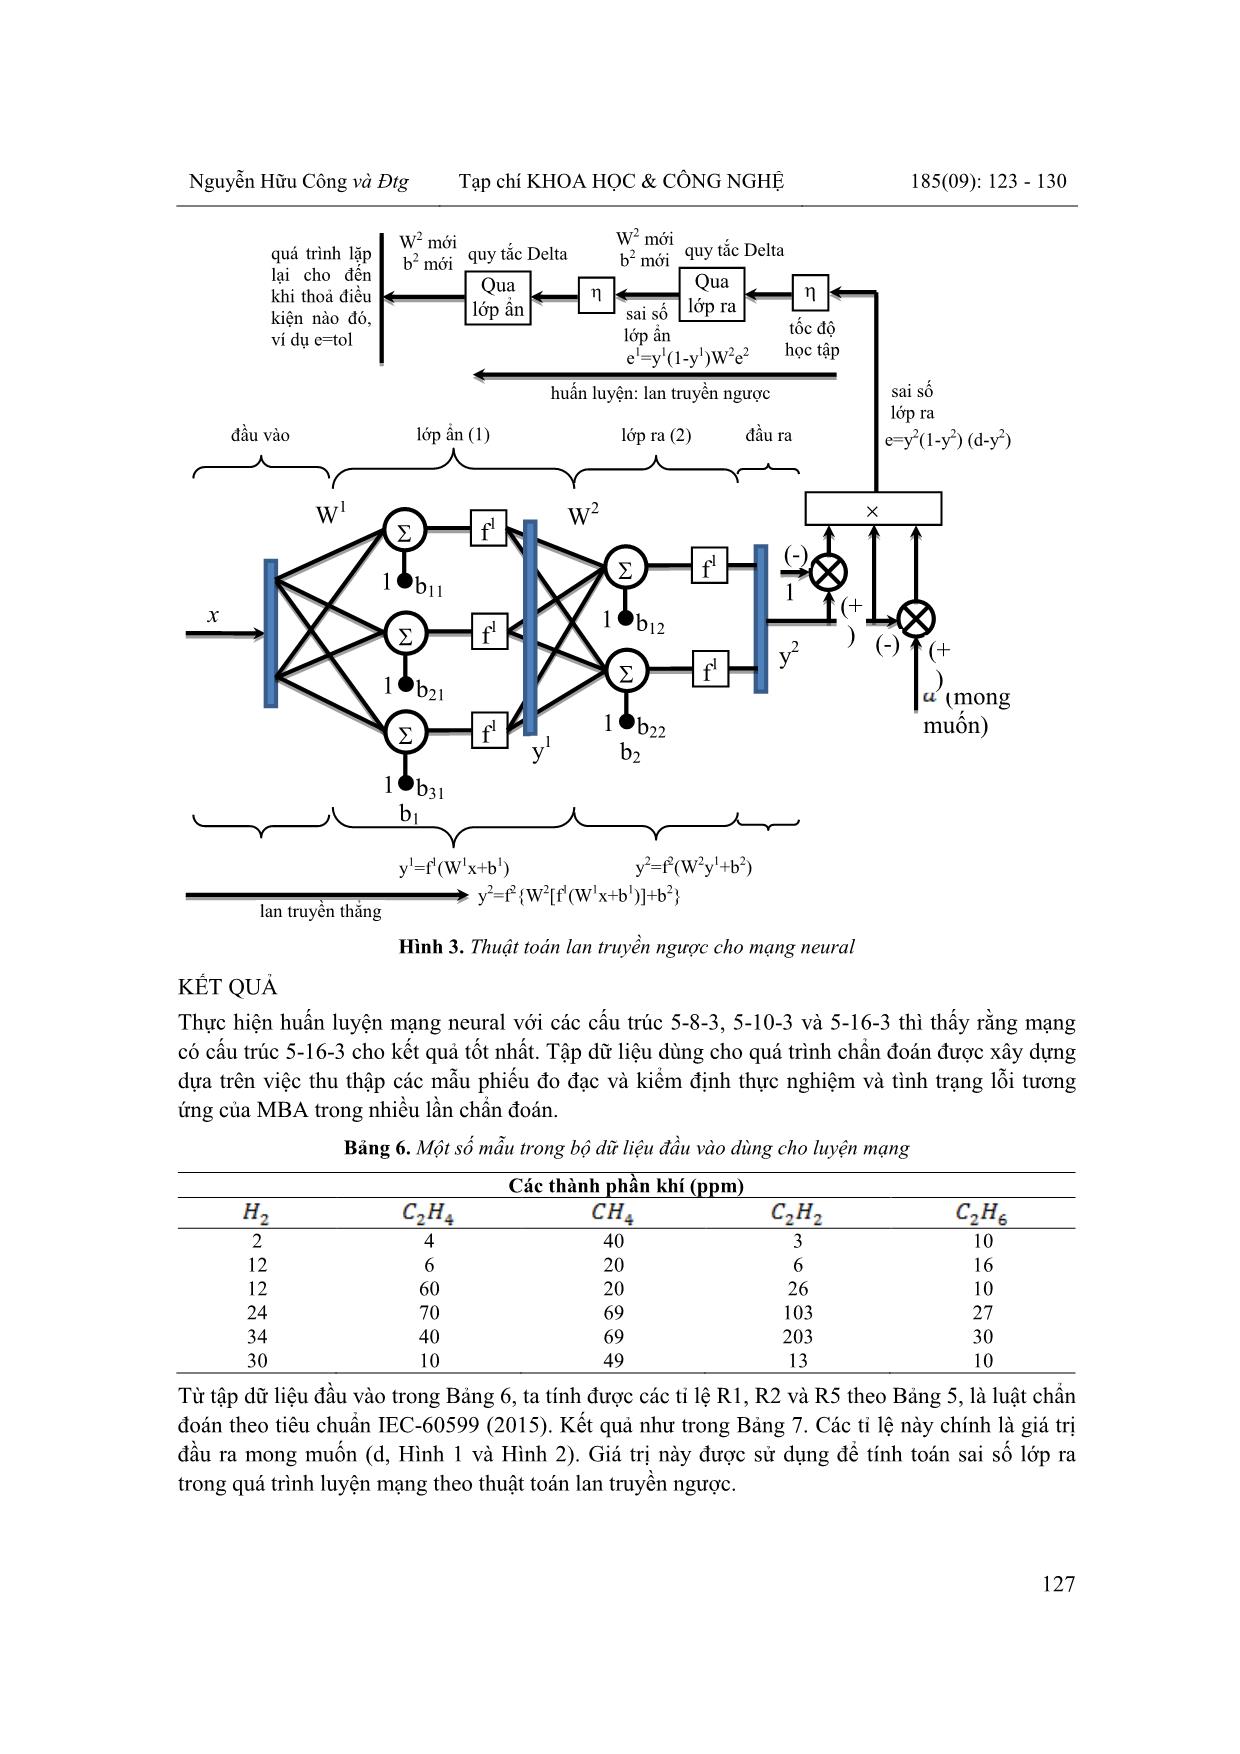 Xây dựng hệ chẩn đoán lỗi tiềm ẩn của máy biến áp lực dựa trên mạng neural kết hợp với phương pháp phân tích khí hoà tan trang 5